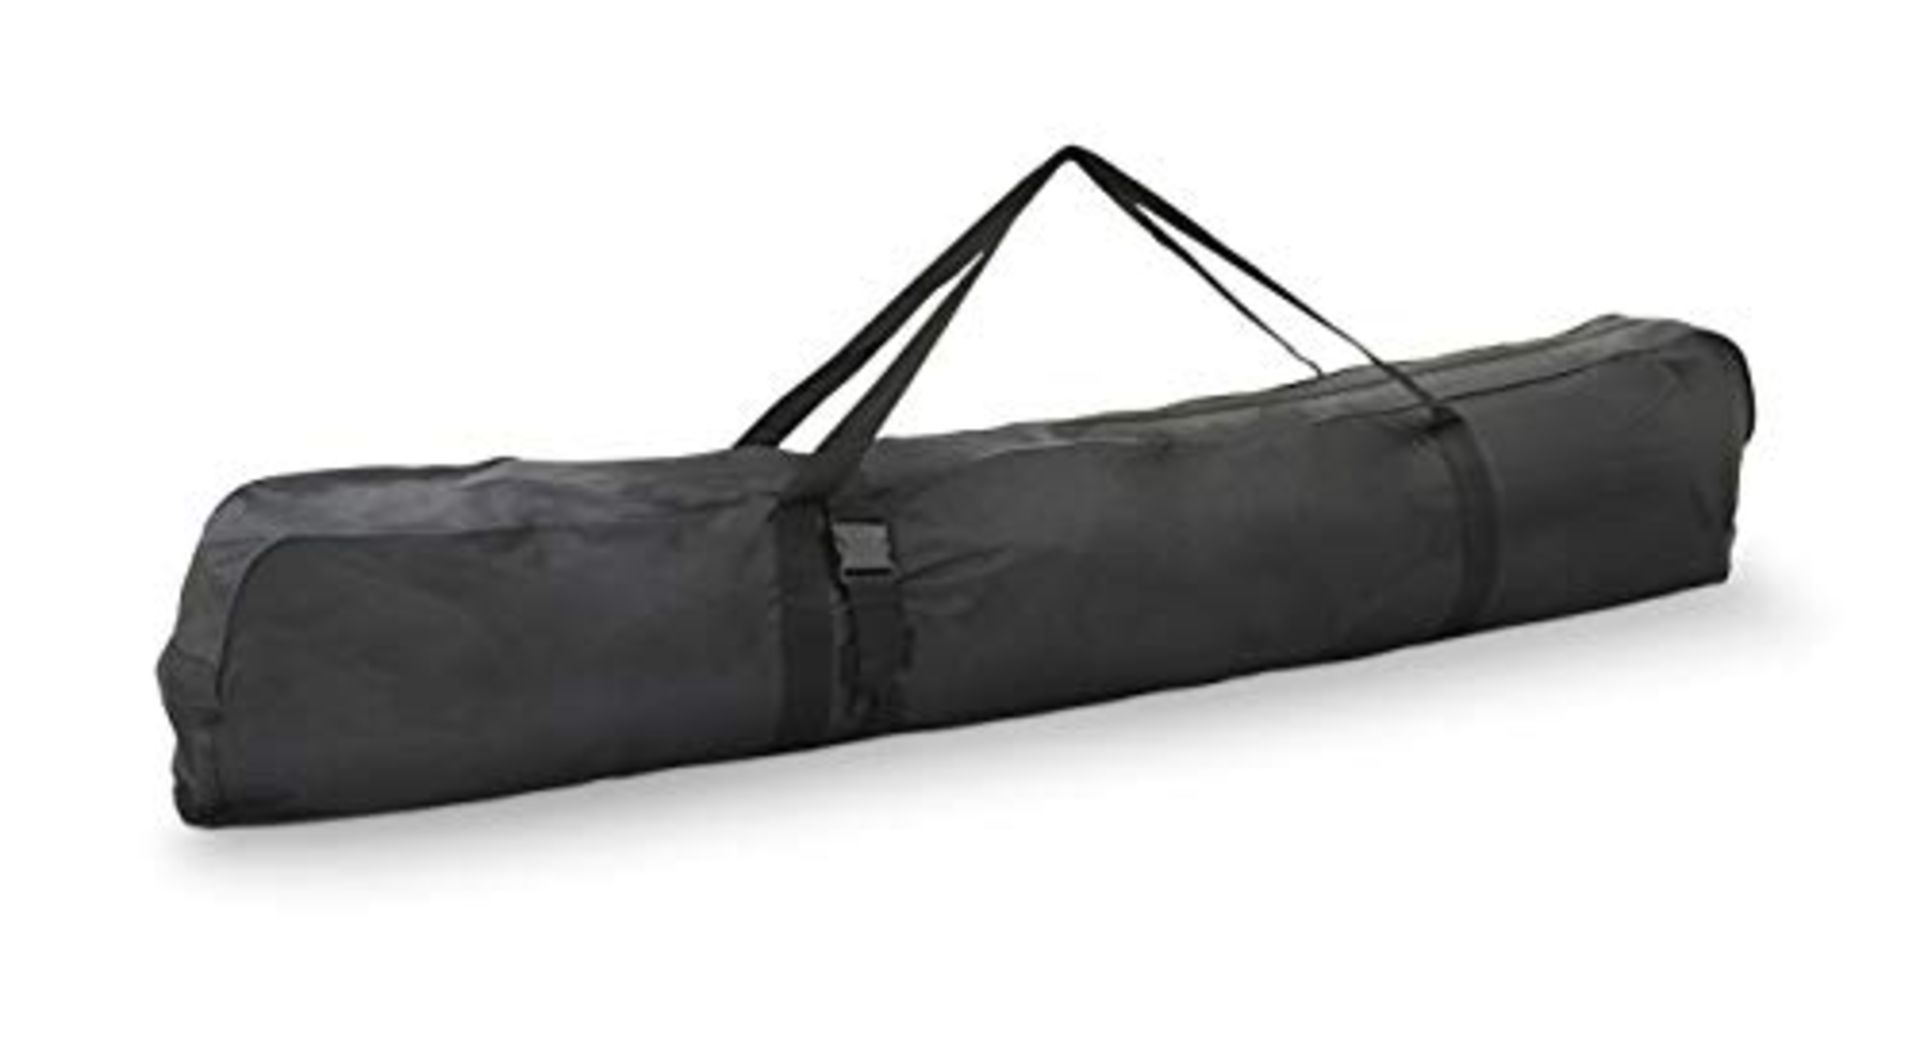 Petex, ski bag in black, 44140004